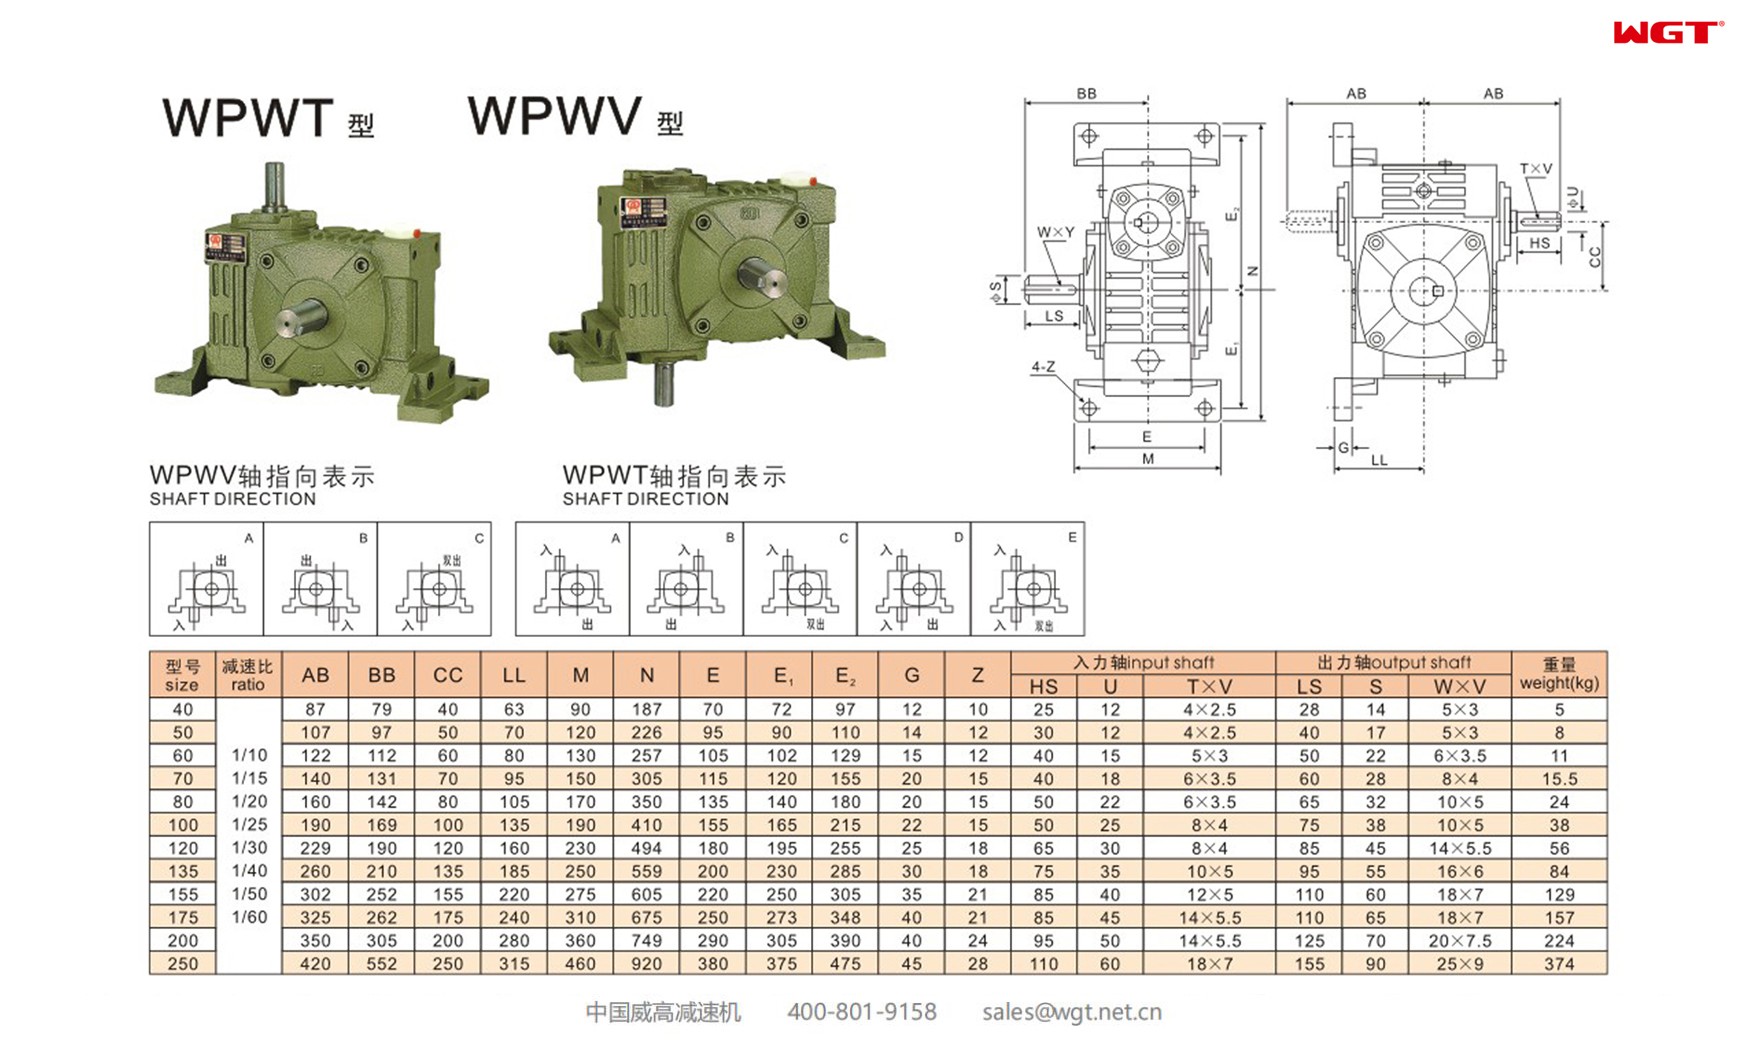 WPWT200 worm gear reducer universal speed reducer